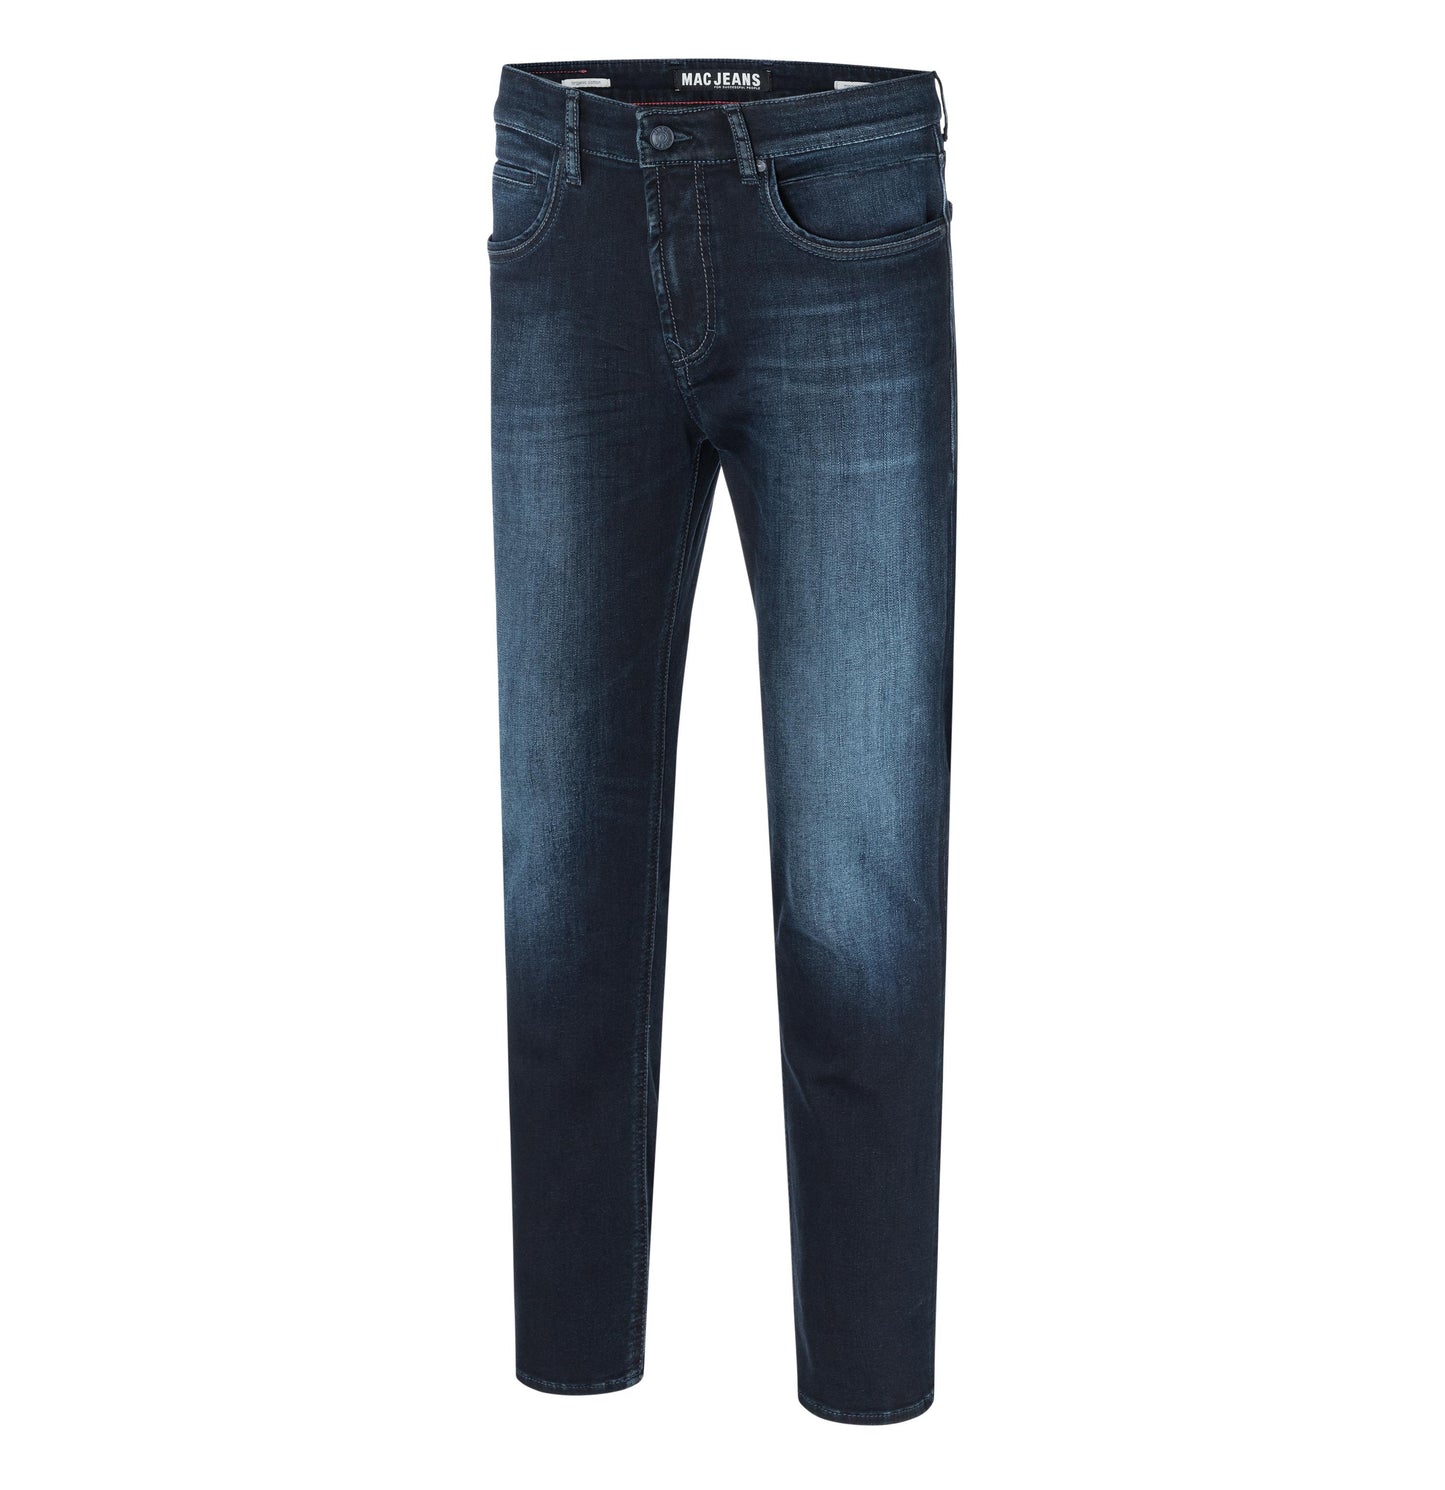 Men's Arnie Pipe MacFlexx Modern Fit Jeans